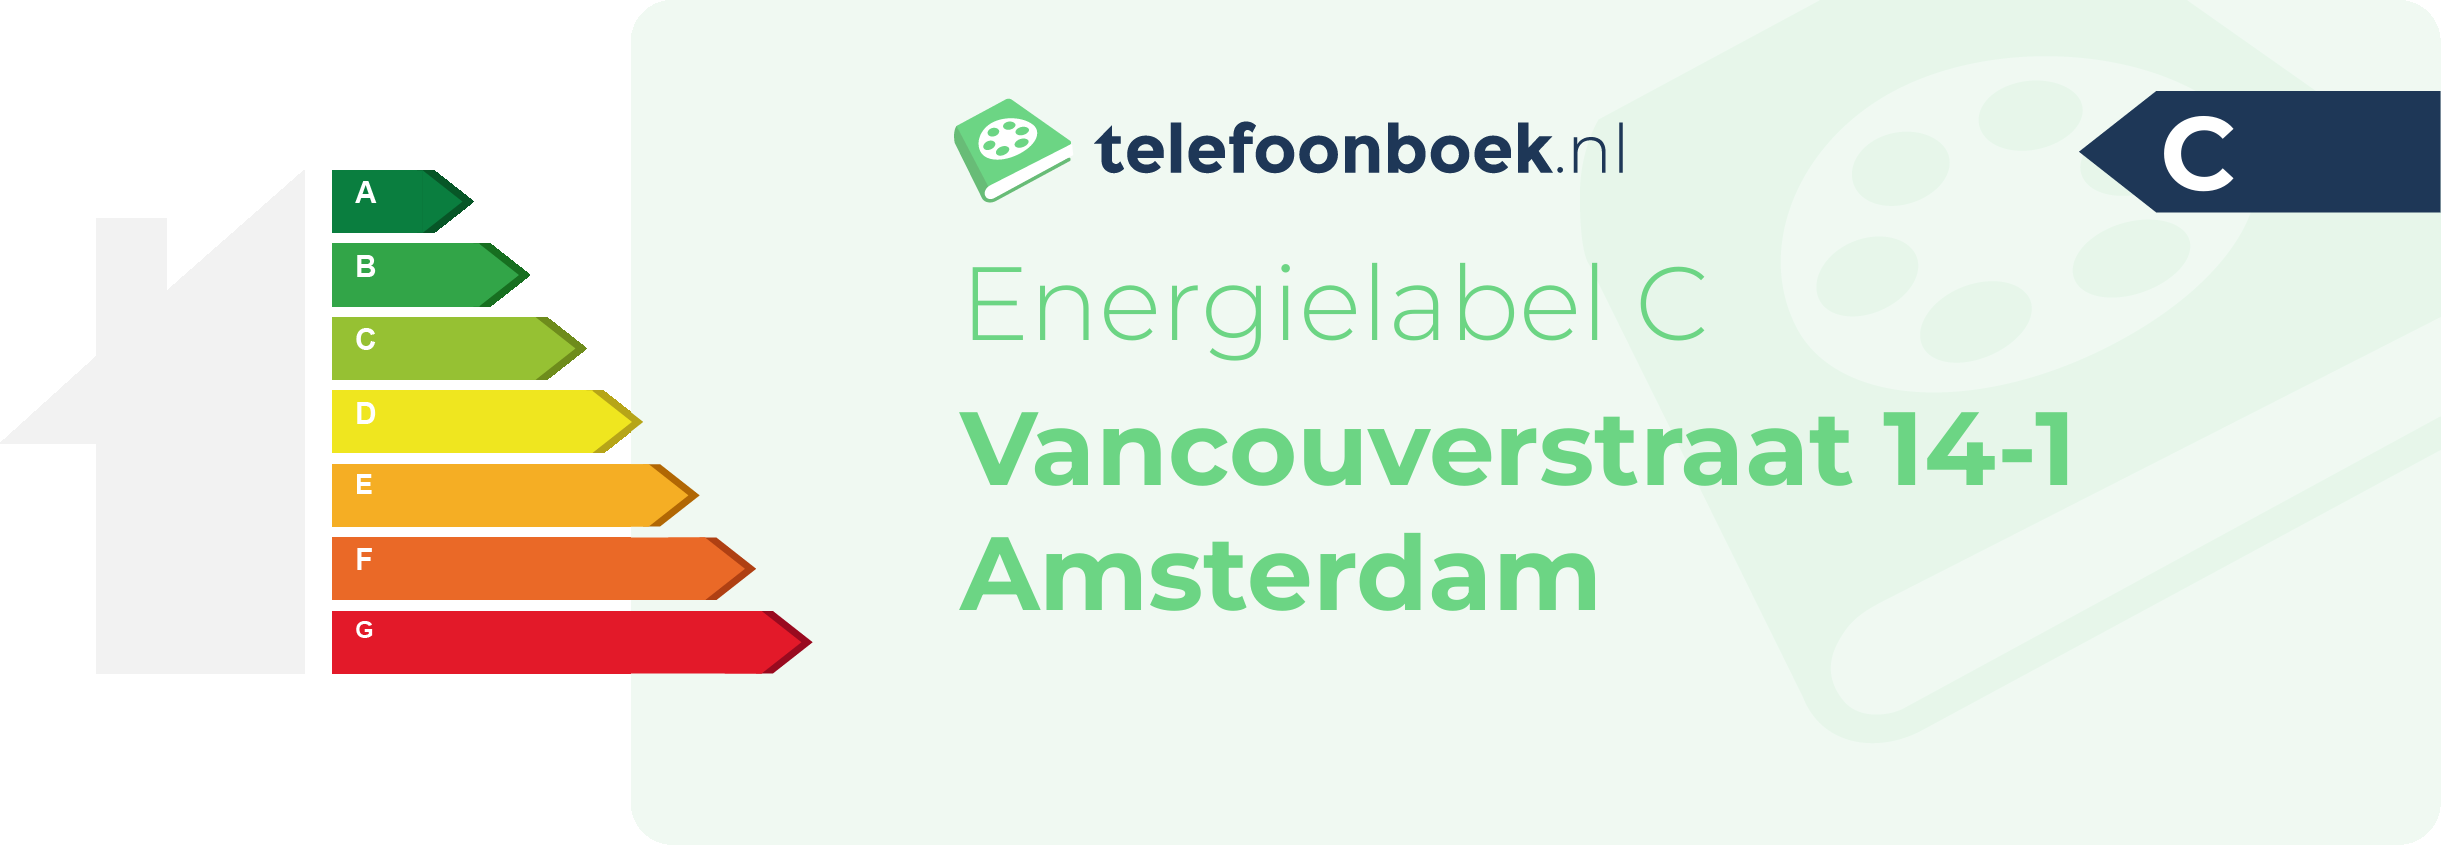 Energielabel Vancouverstraat 14-1 Amsterdam